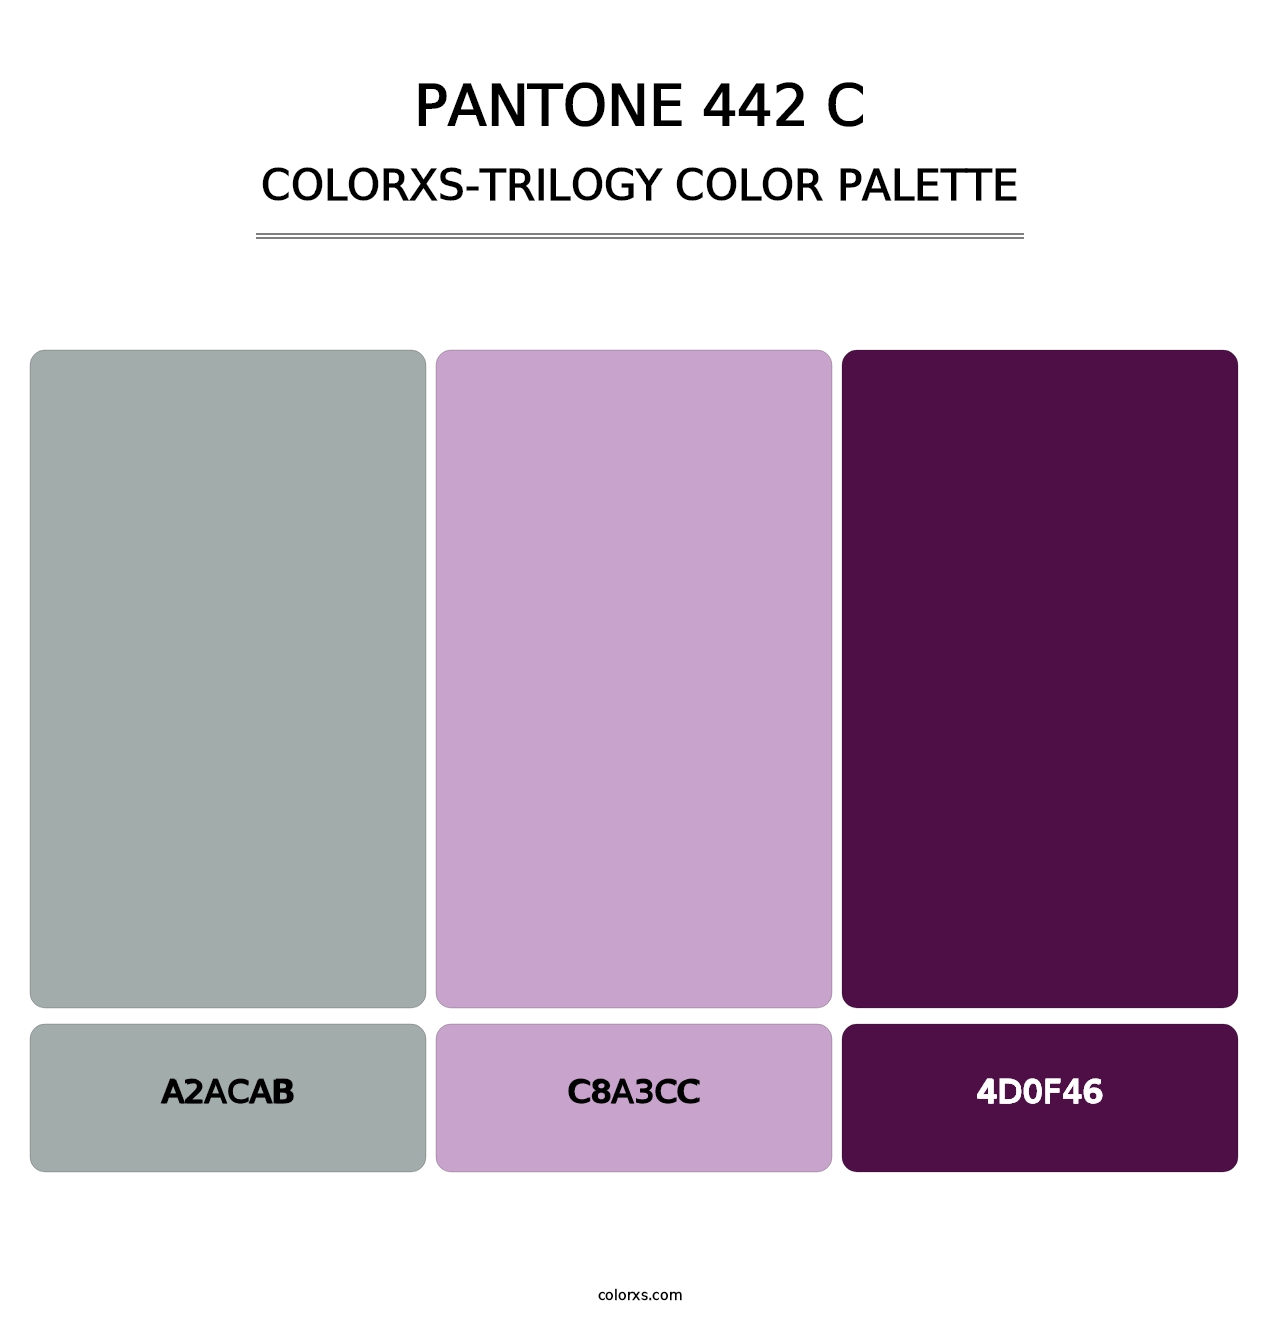 PANTONE 442 C - Colorxs Trilogy Palette